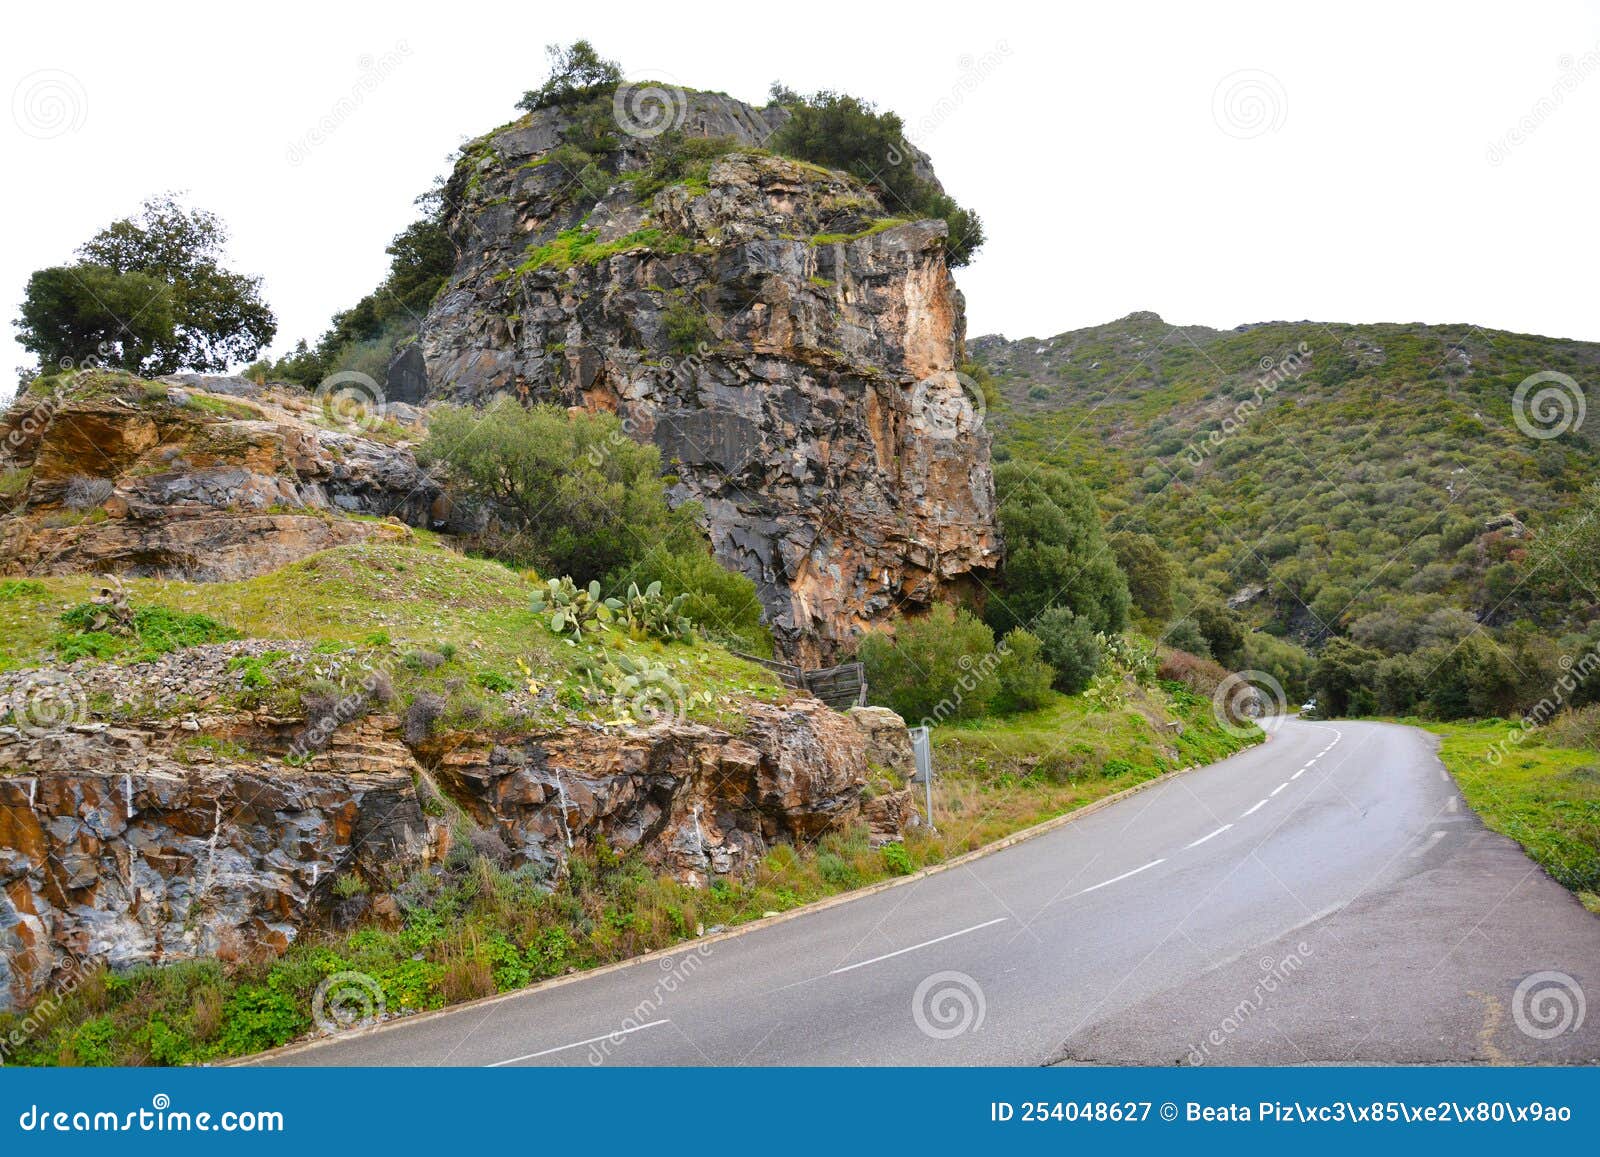 cliff over a road in patrimonio, corsica